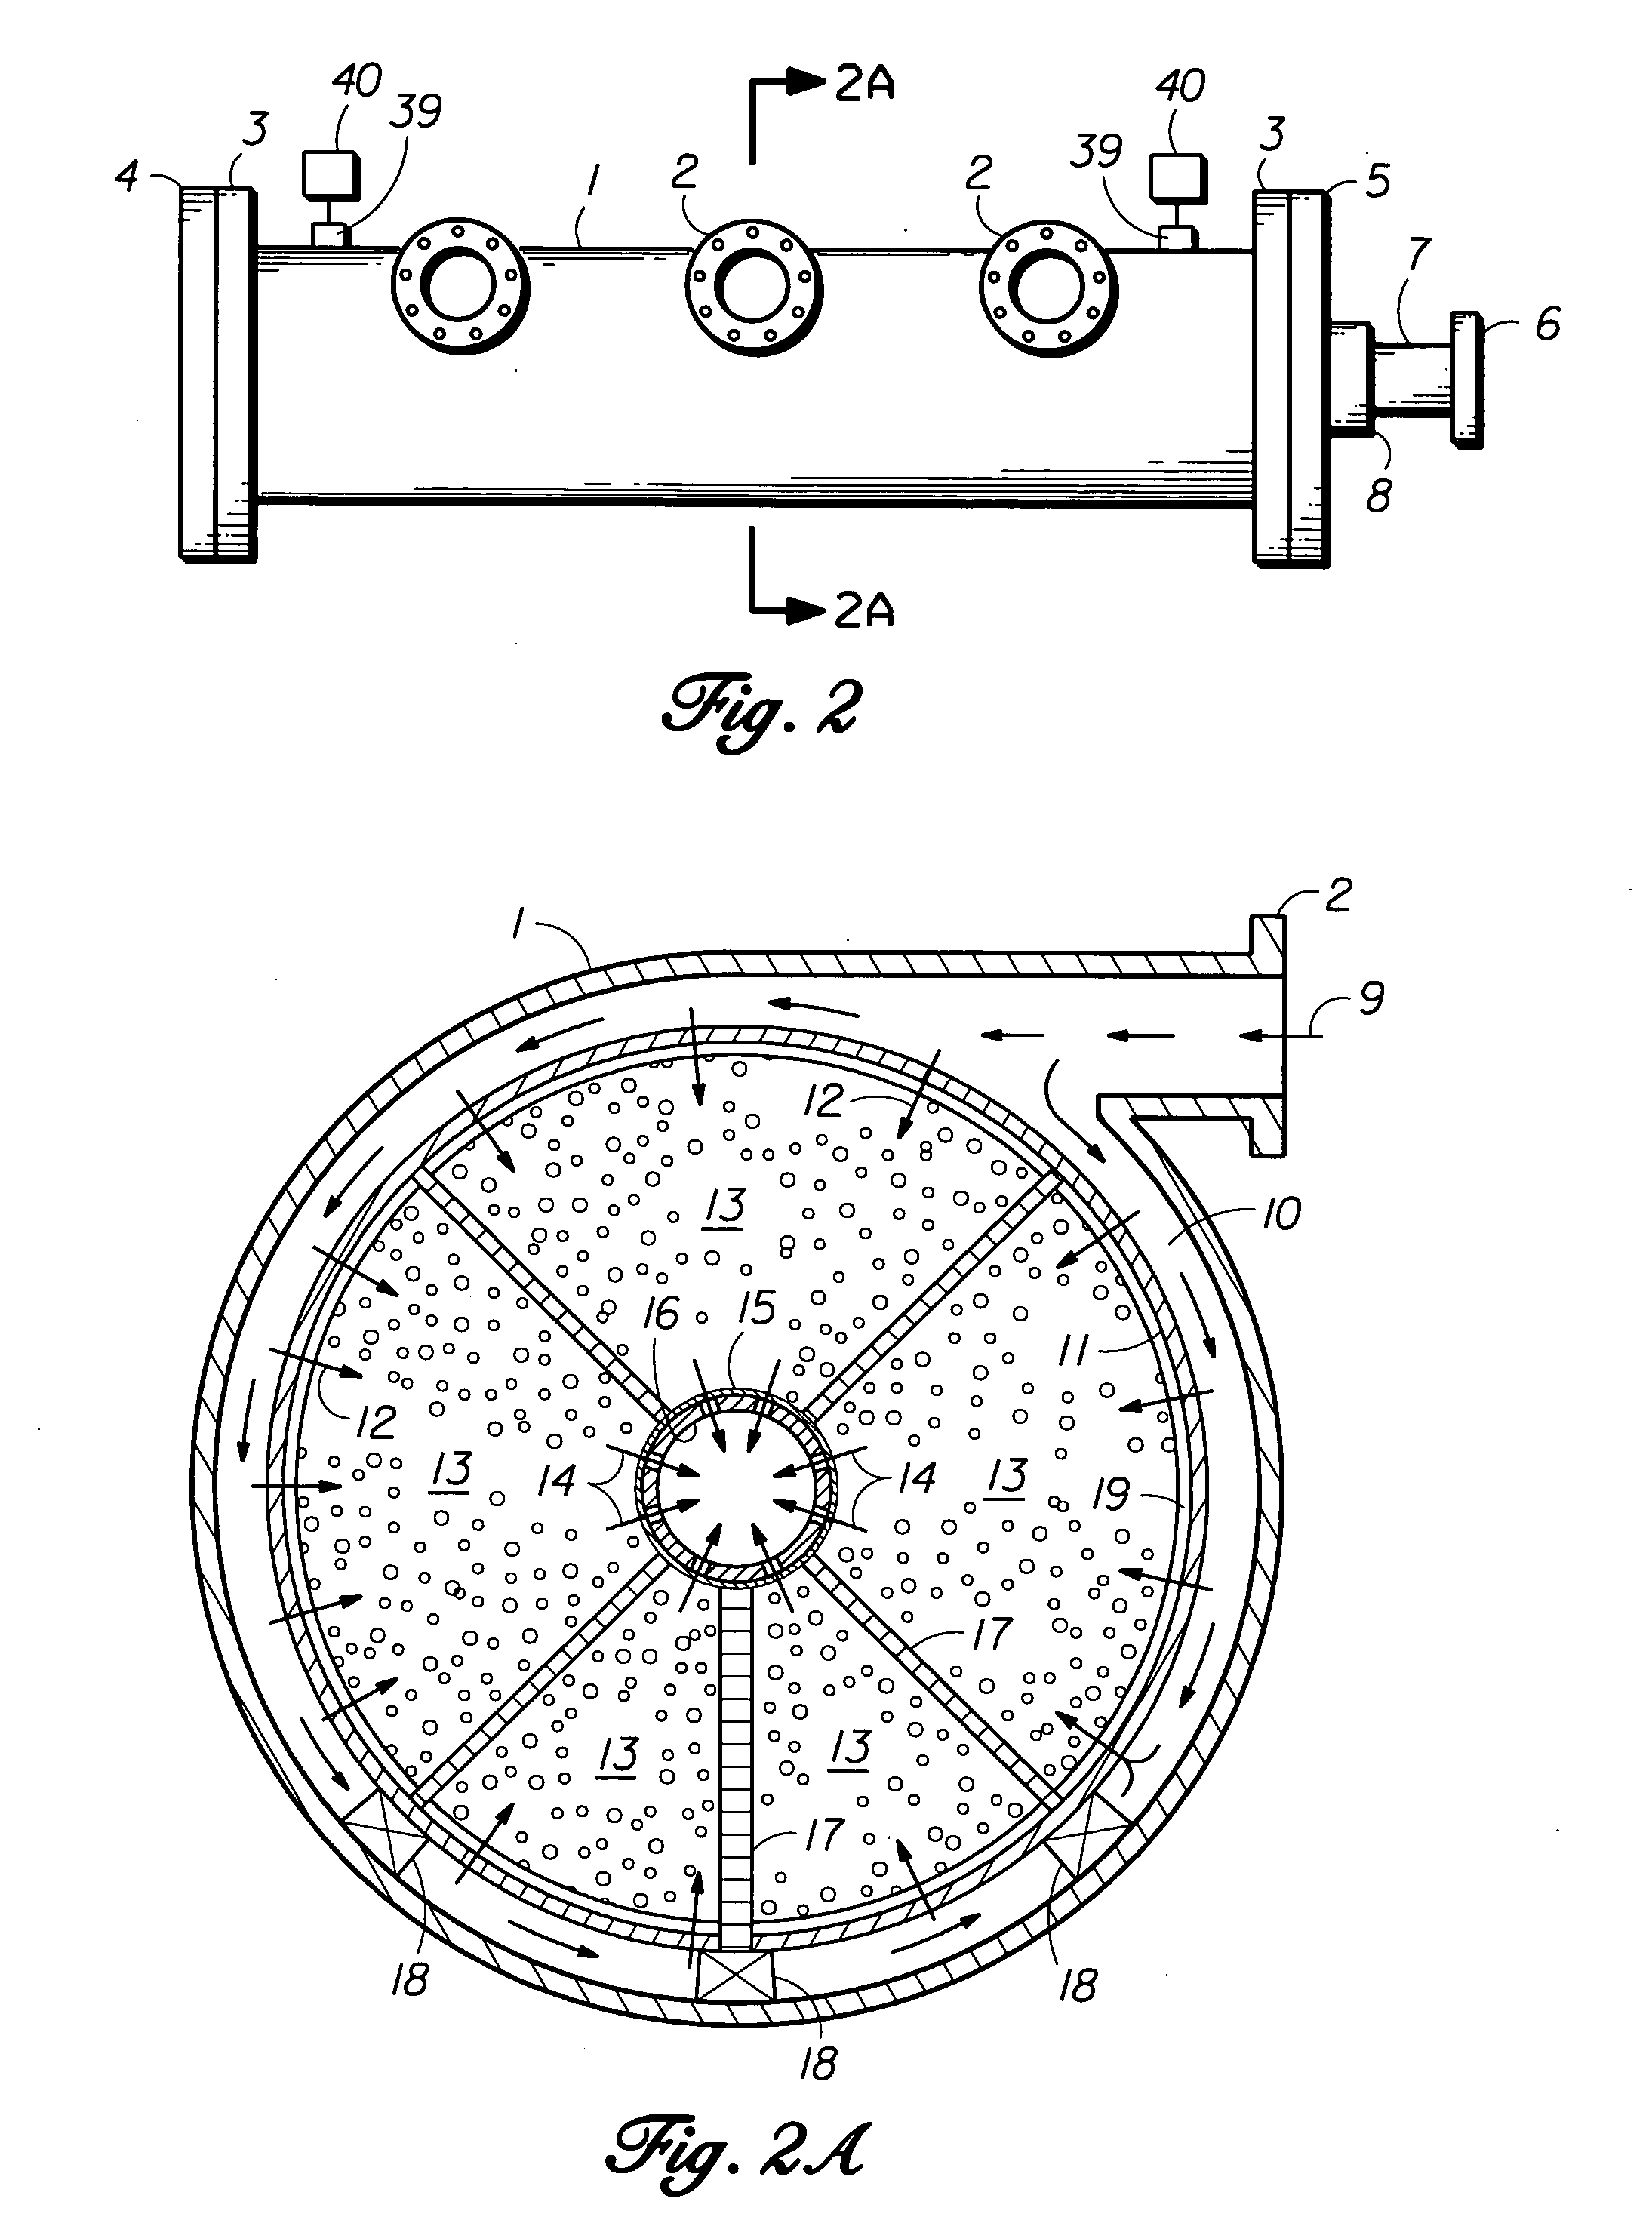 Gas separation vessel apparatus